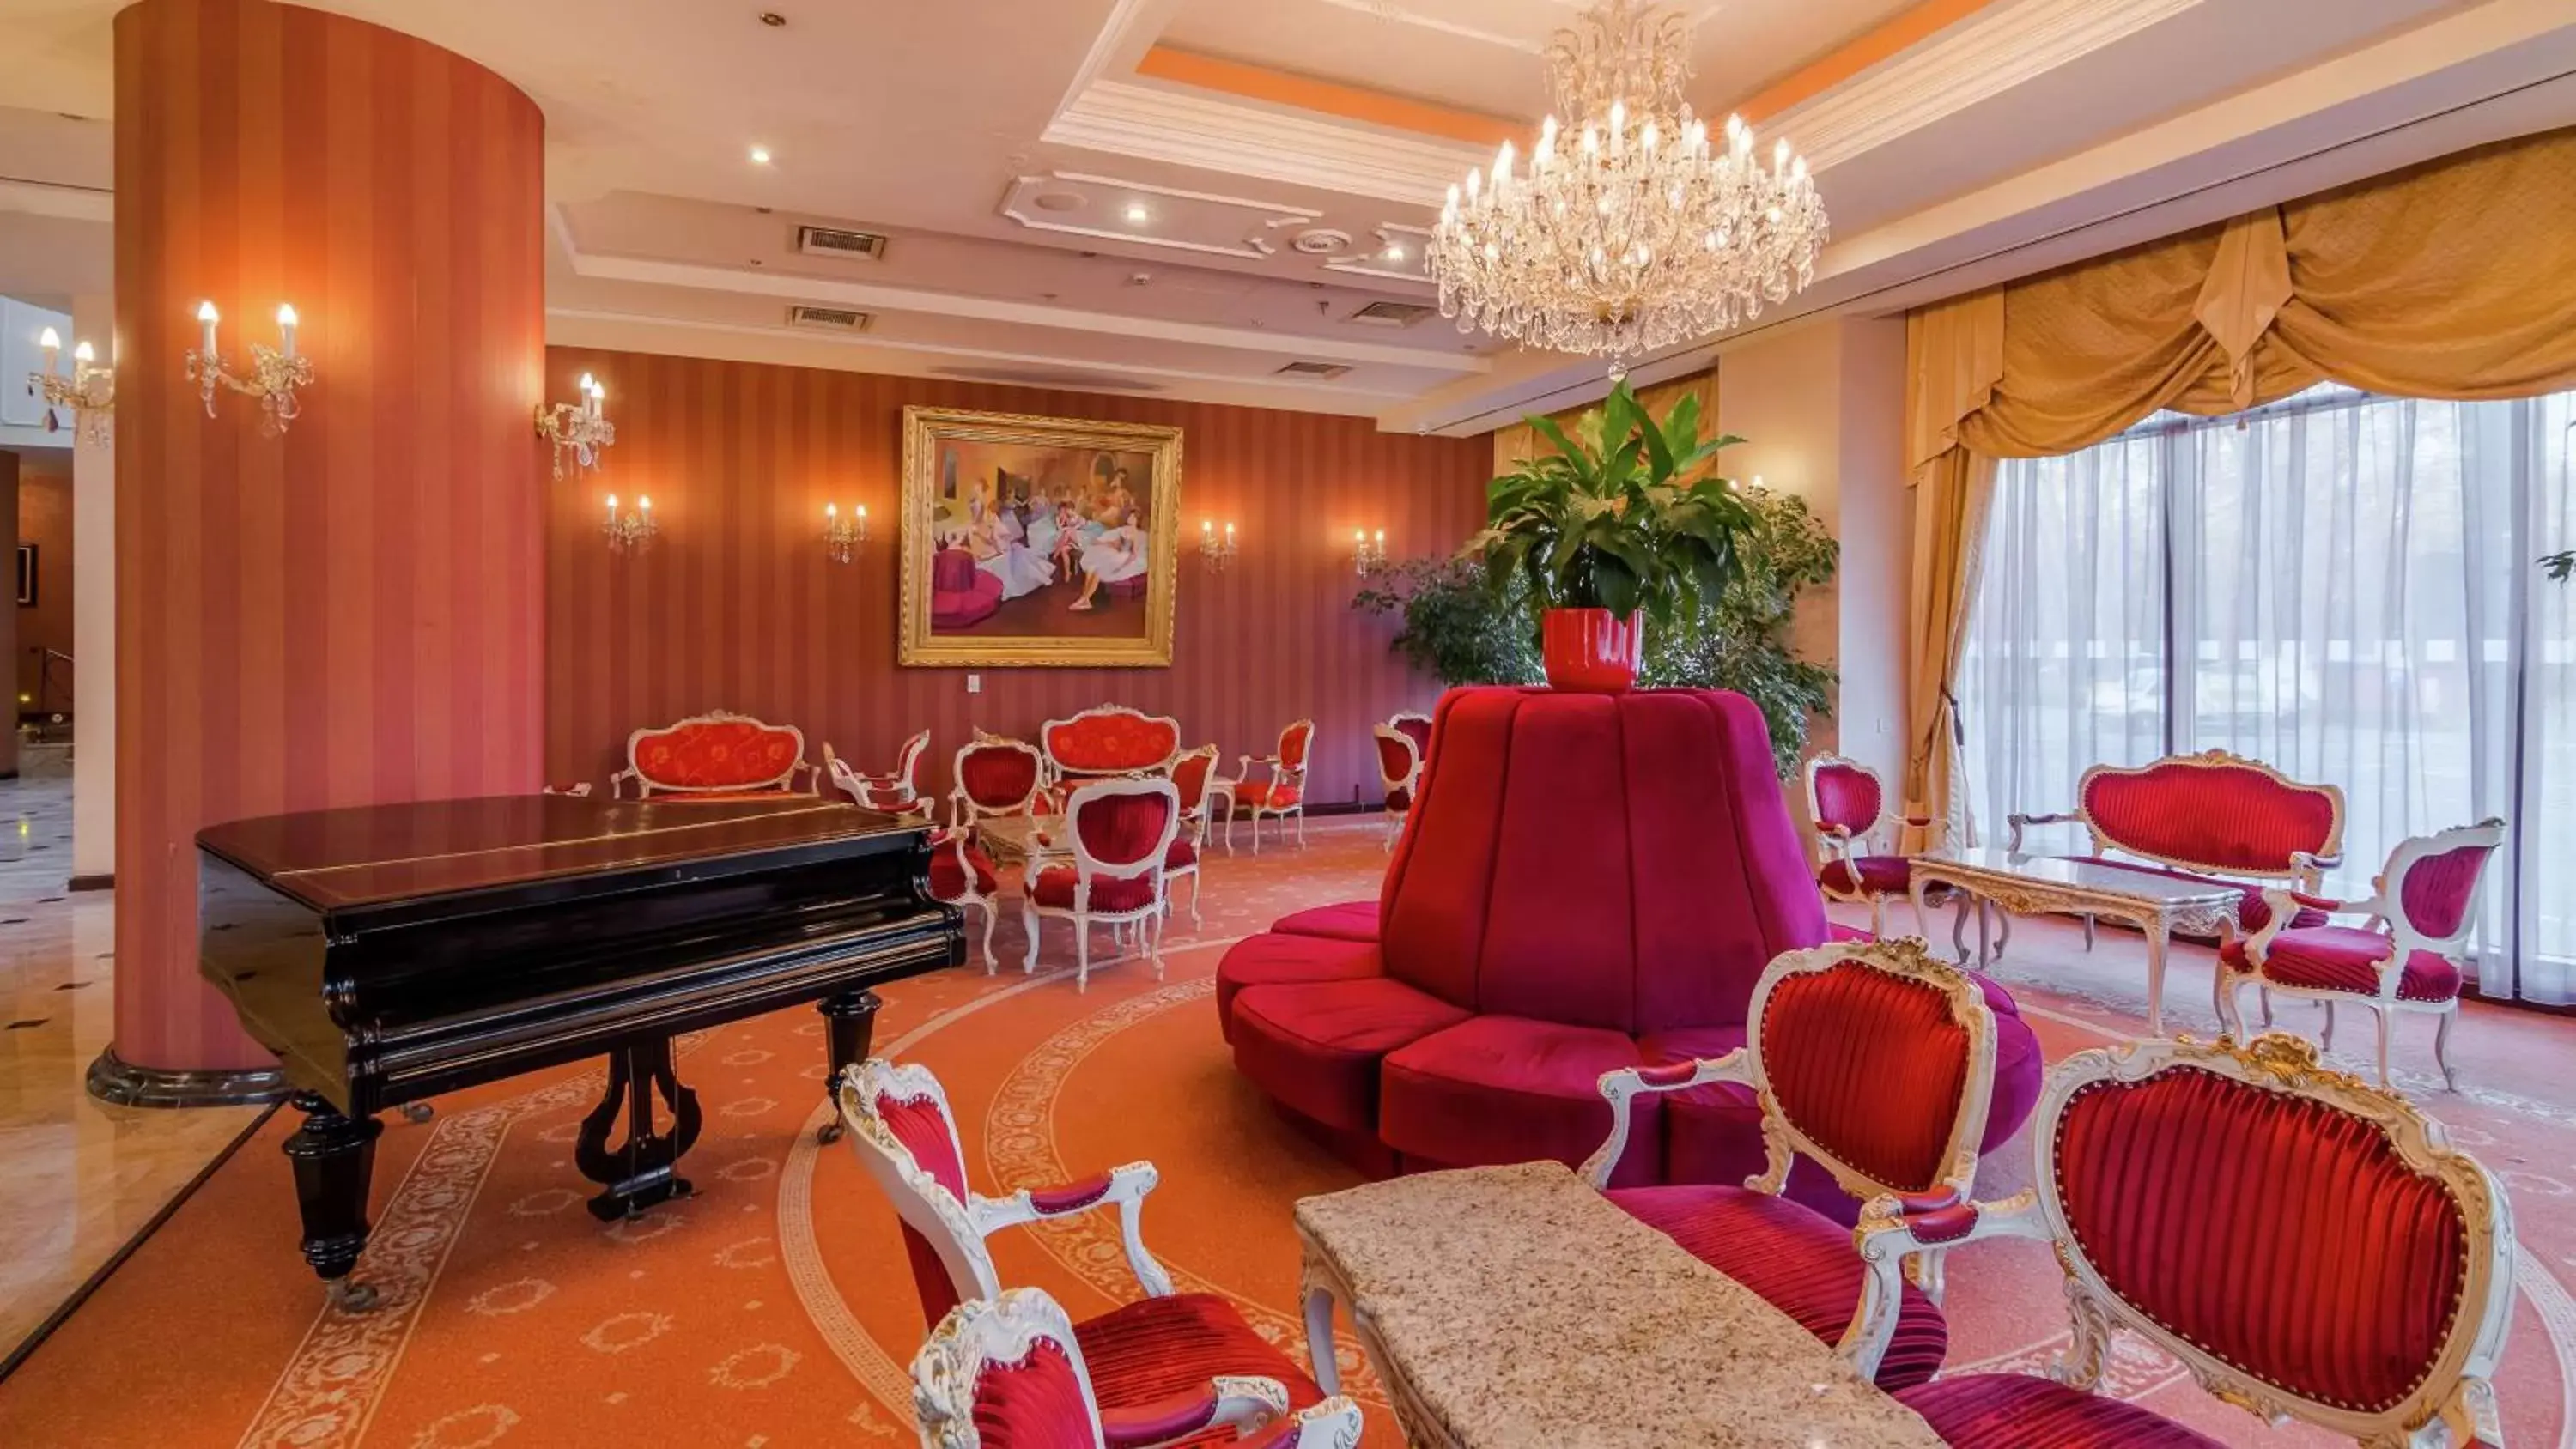 Lobby or reception in Hilton Sibiu